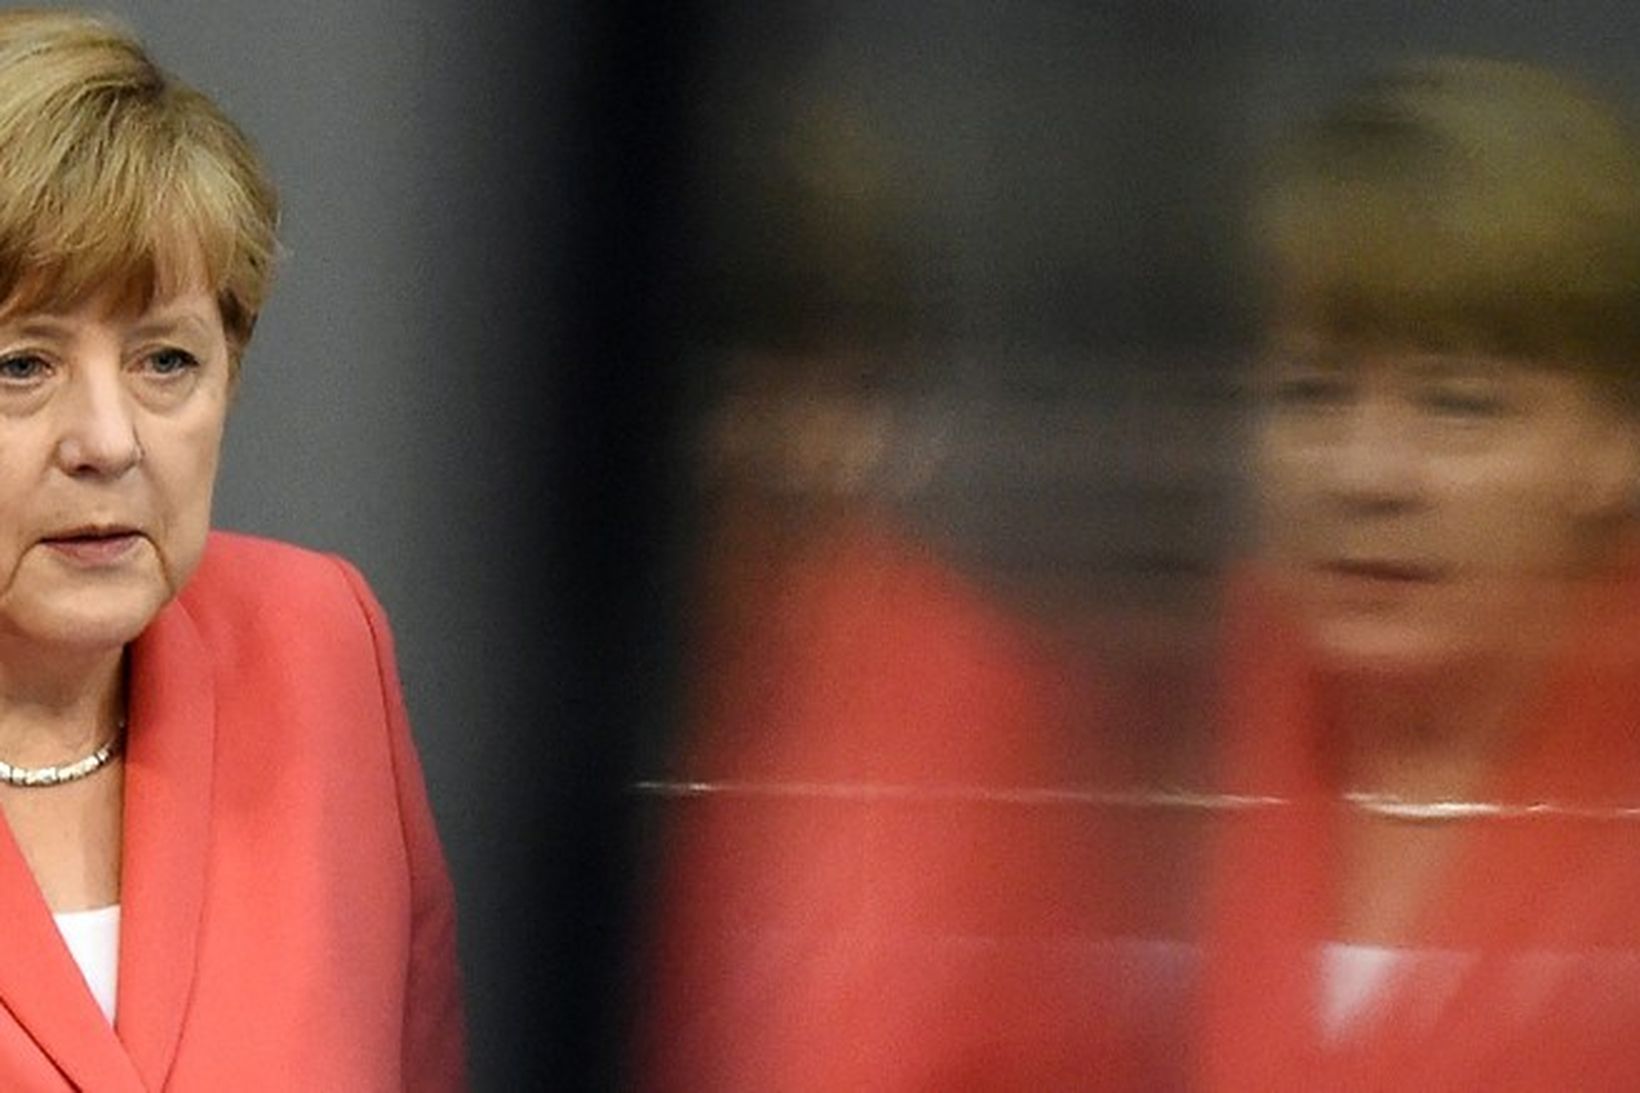 Angela Merkel Þýskalandskanslari.